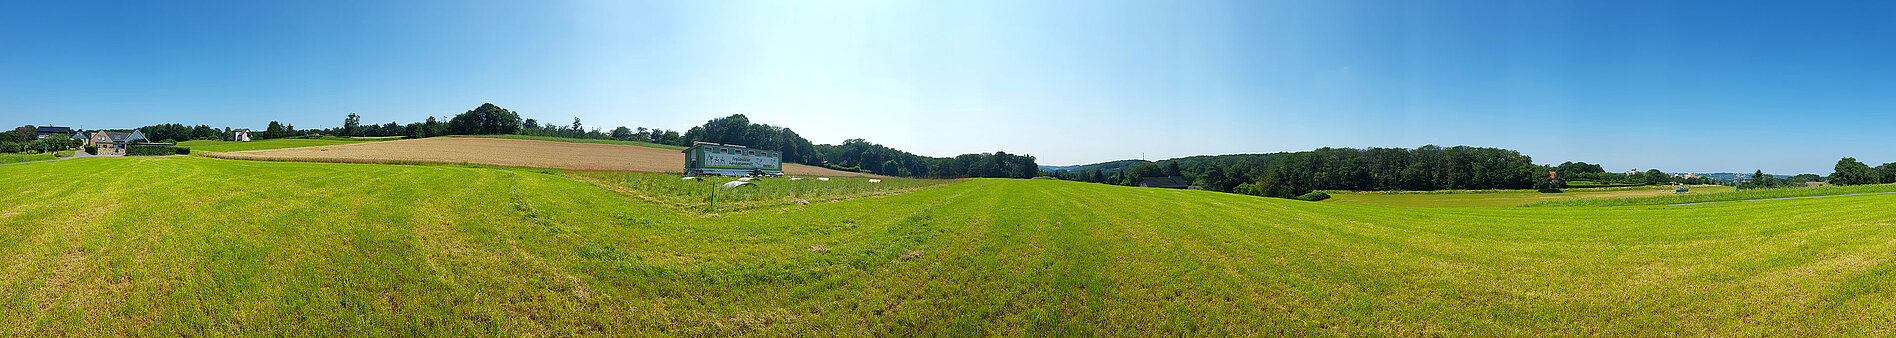 Freilandhühner am Salzweg Holthausen Panorama